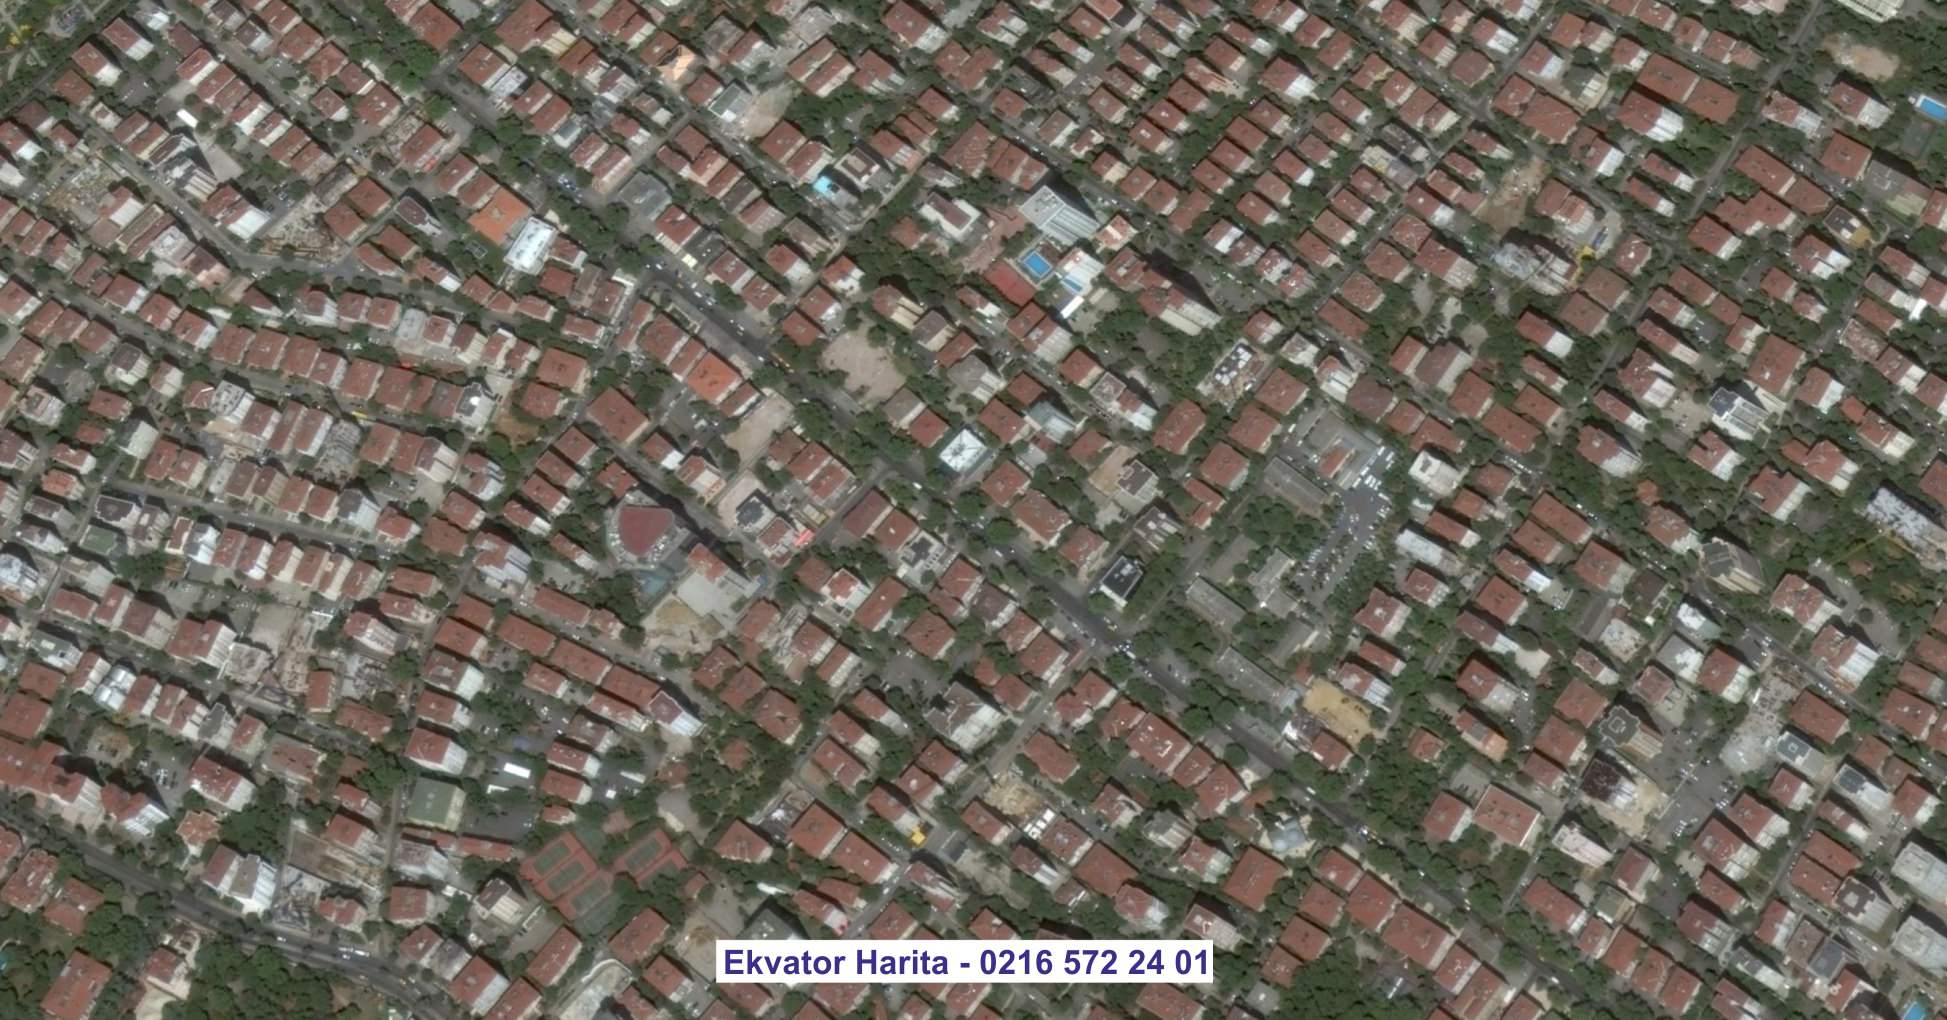 Şile Uydu Görüntüsü Örnek Fotoğrafı